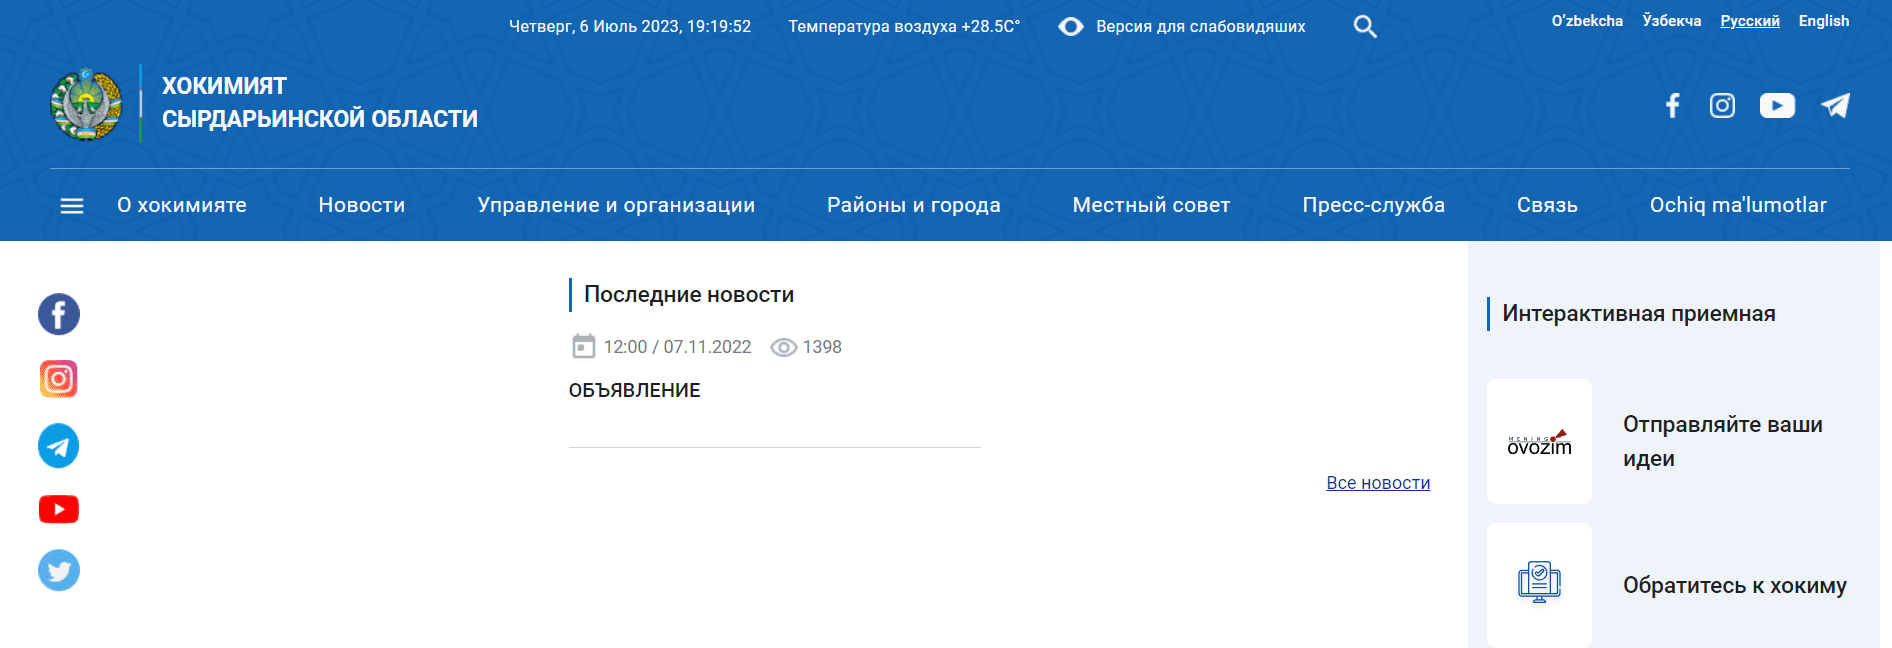 Хокимият Сырдарьинской области (sirdaryo.uz) - официальный сайт